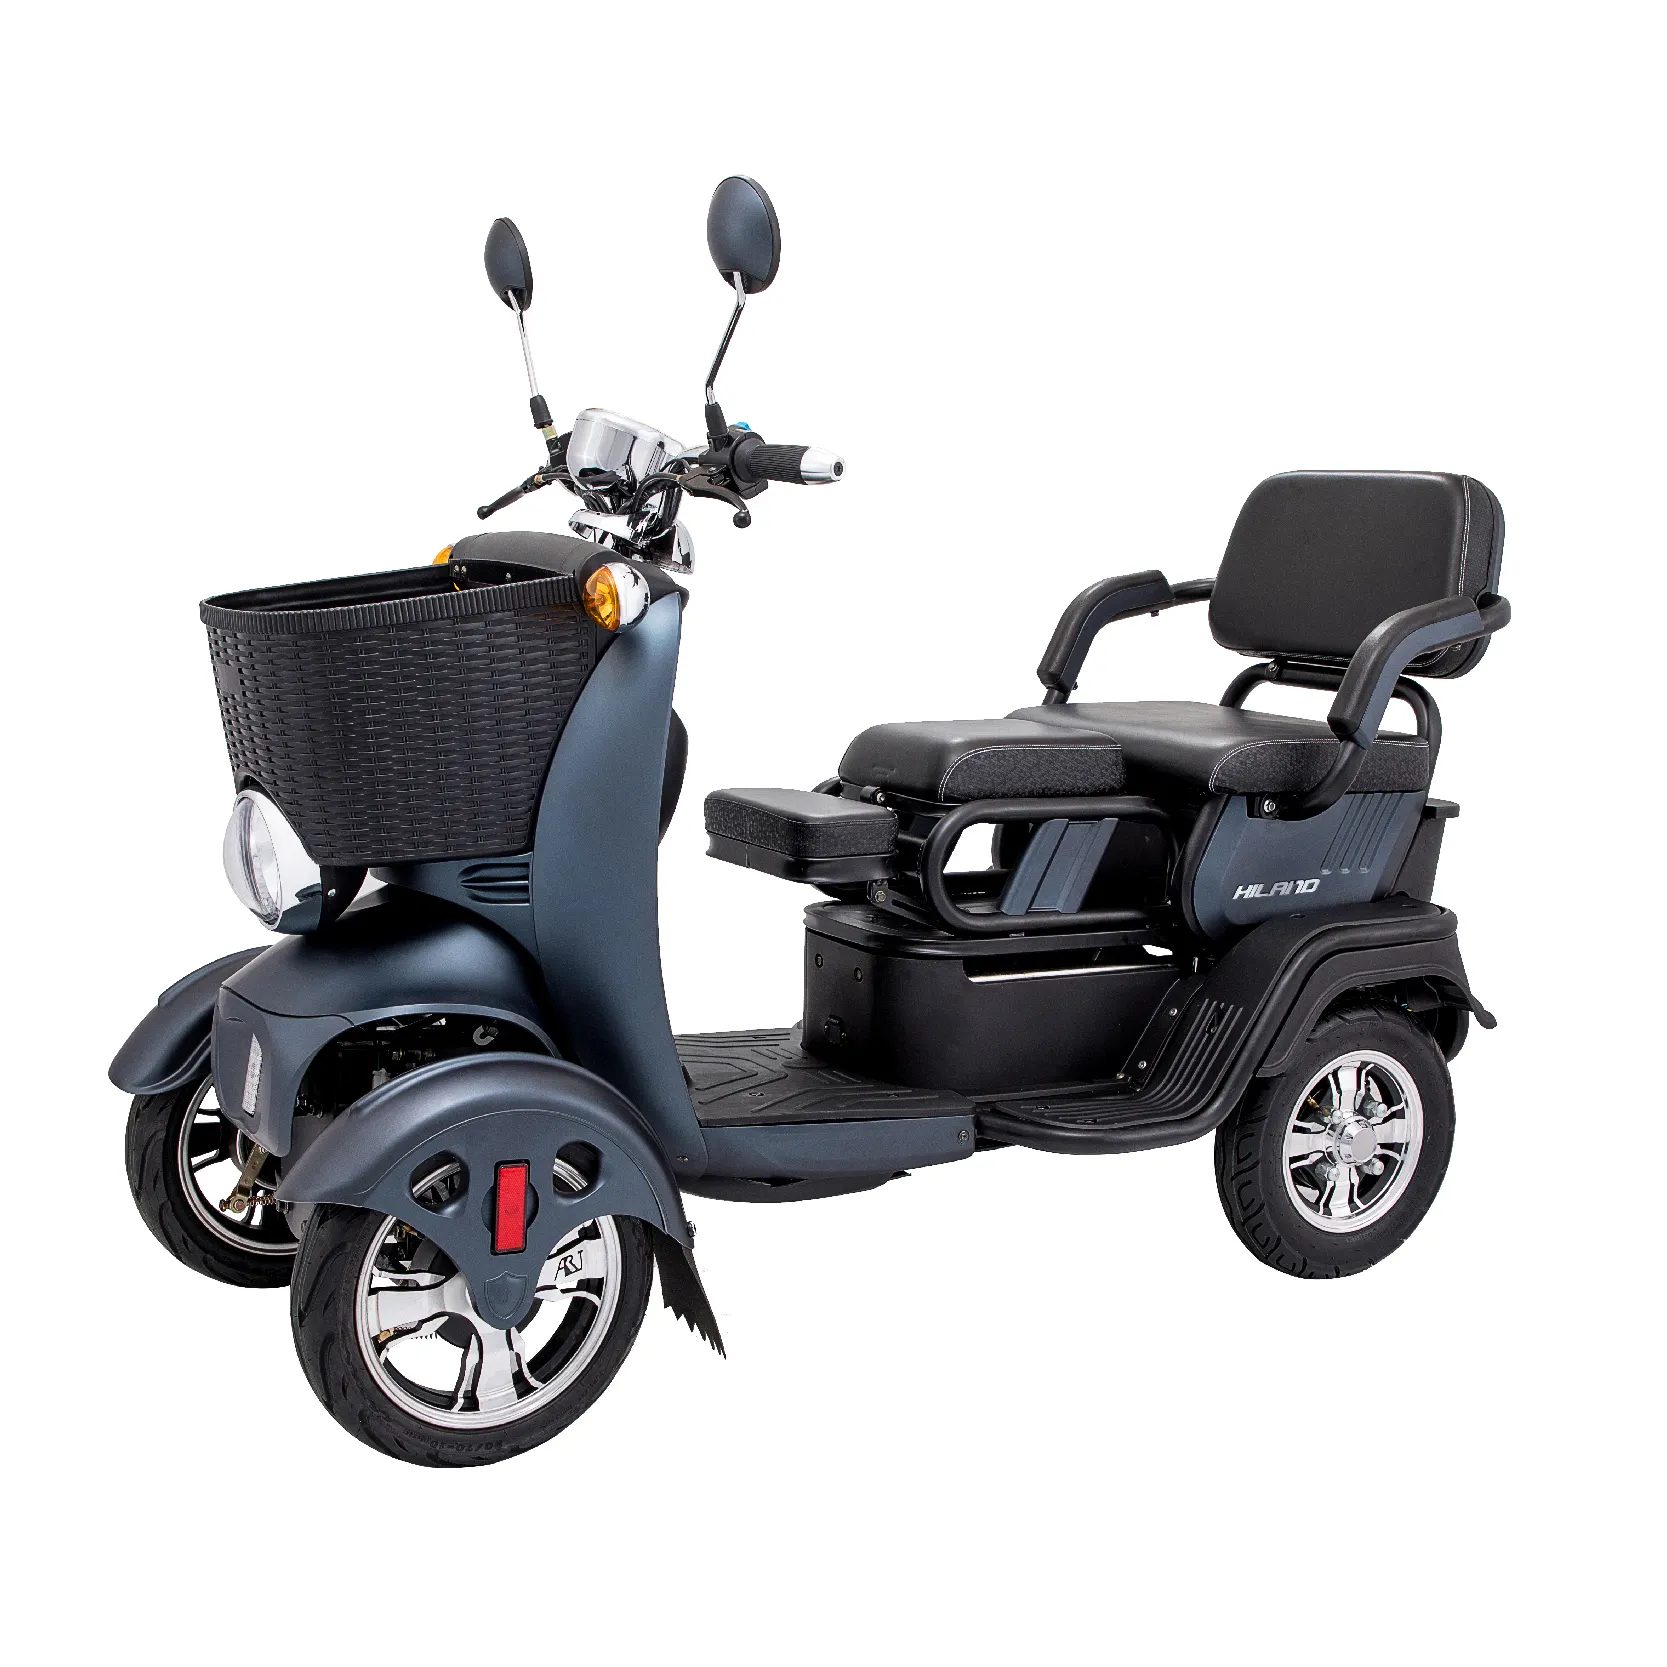 JOYKIE 3 koltuk aile seyahat turist hareketlilik scooter elektrikli 4 tekerlekli küçük elektrikli araç